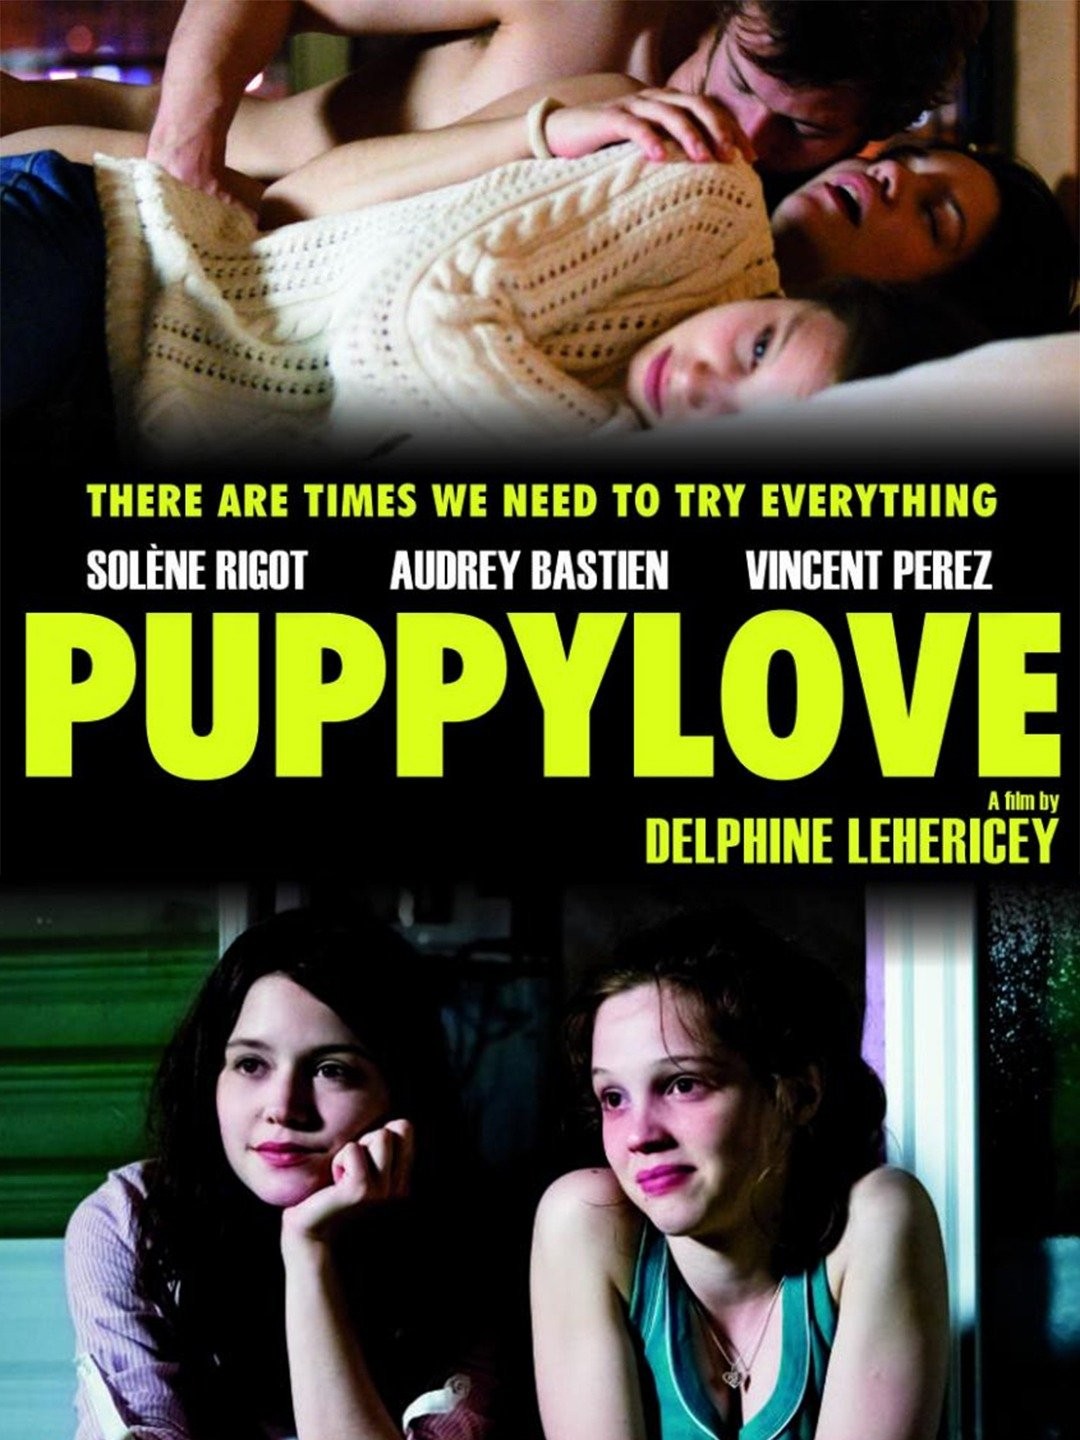 Puppylove 2013